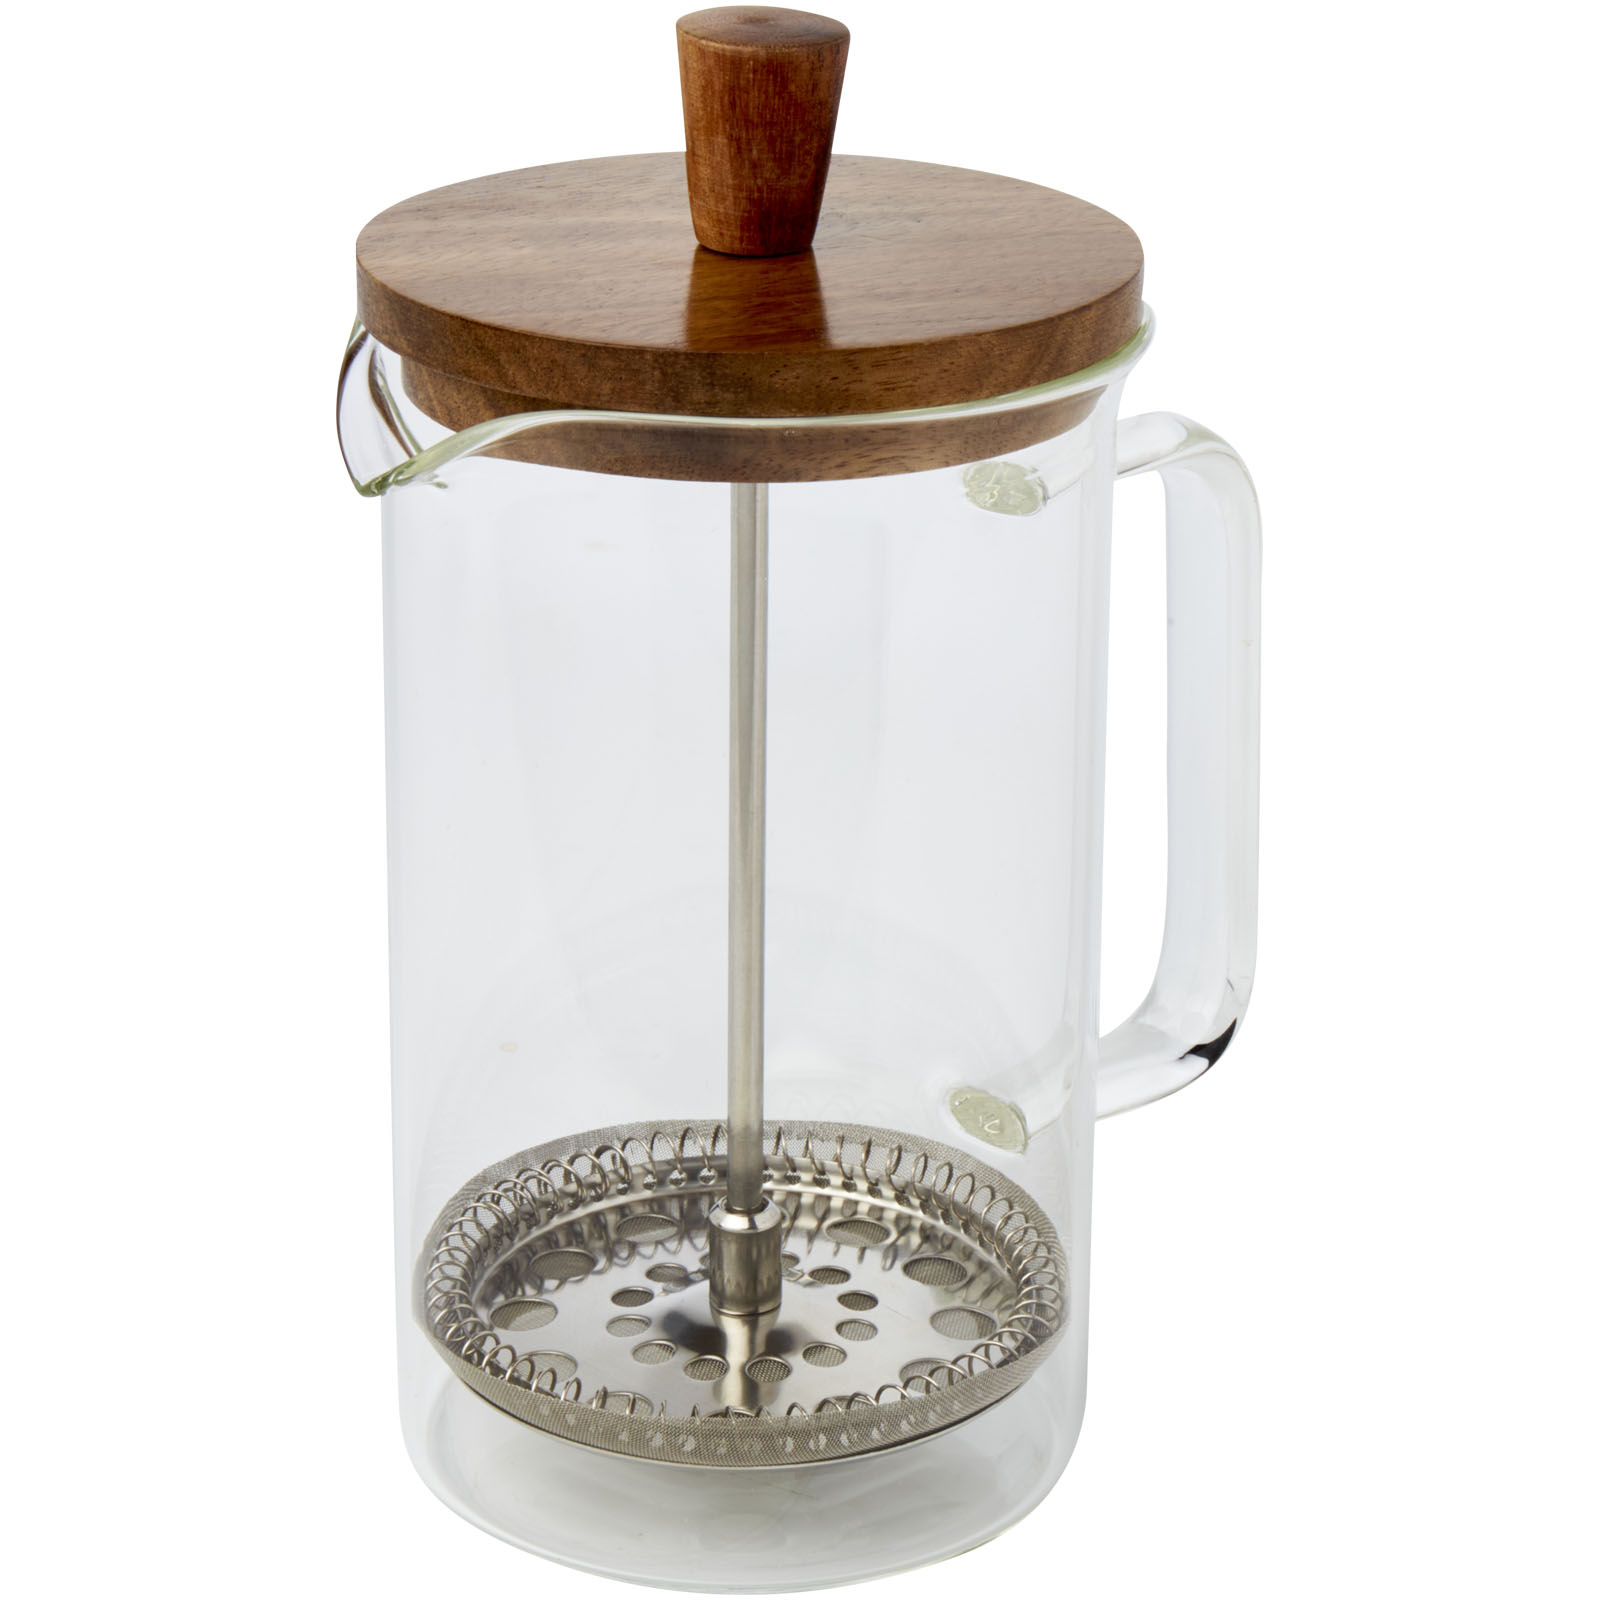 Advertising Kitchenware - Ivorie 600 ml coffee press  - 5